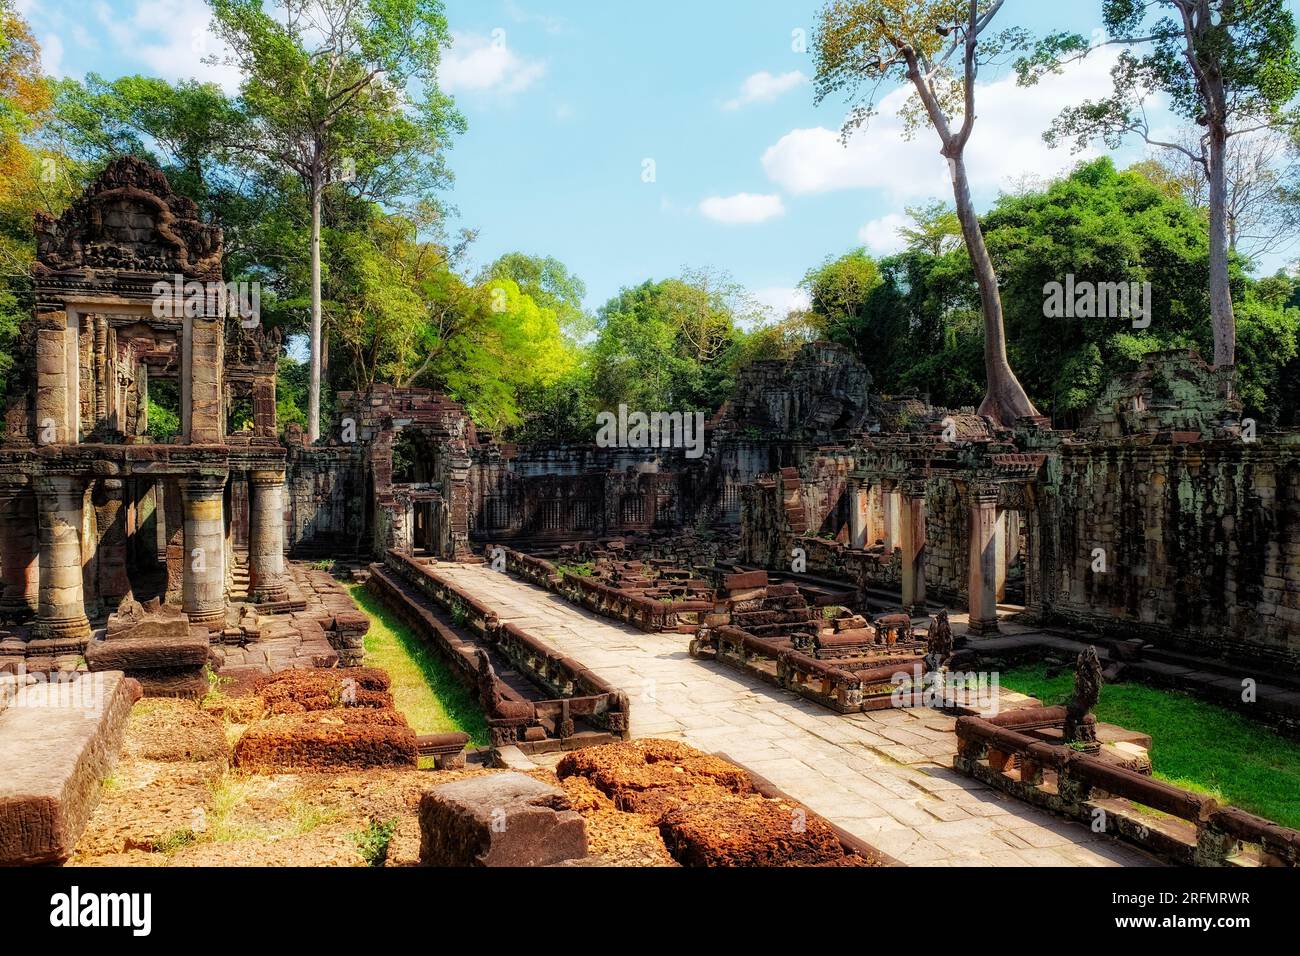 Entdecken Sie die Vergangenheit: Berühmte antike Ruinen inmitten der kambodschanischen Wälder, Denkmäler der Khmer-Architektur und das dauerhafte Erbe der östlichen Zivilisation Stockfoto